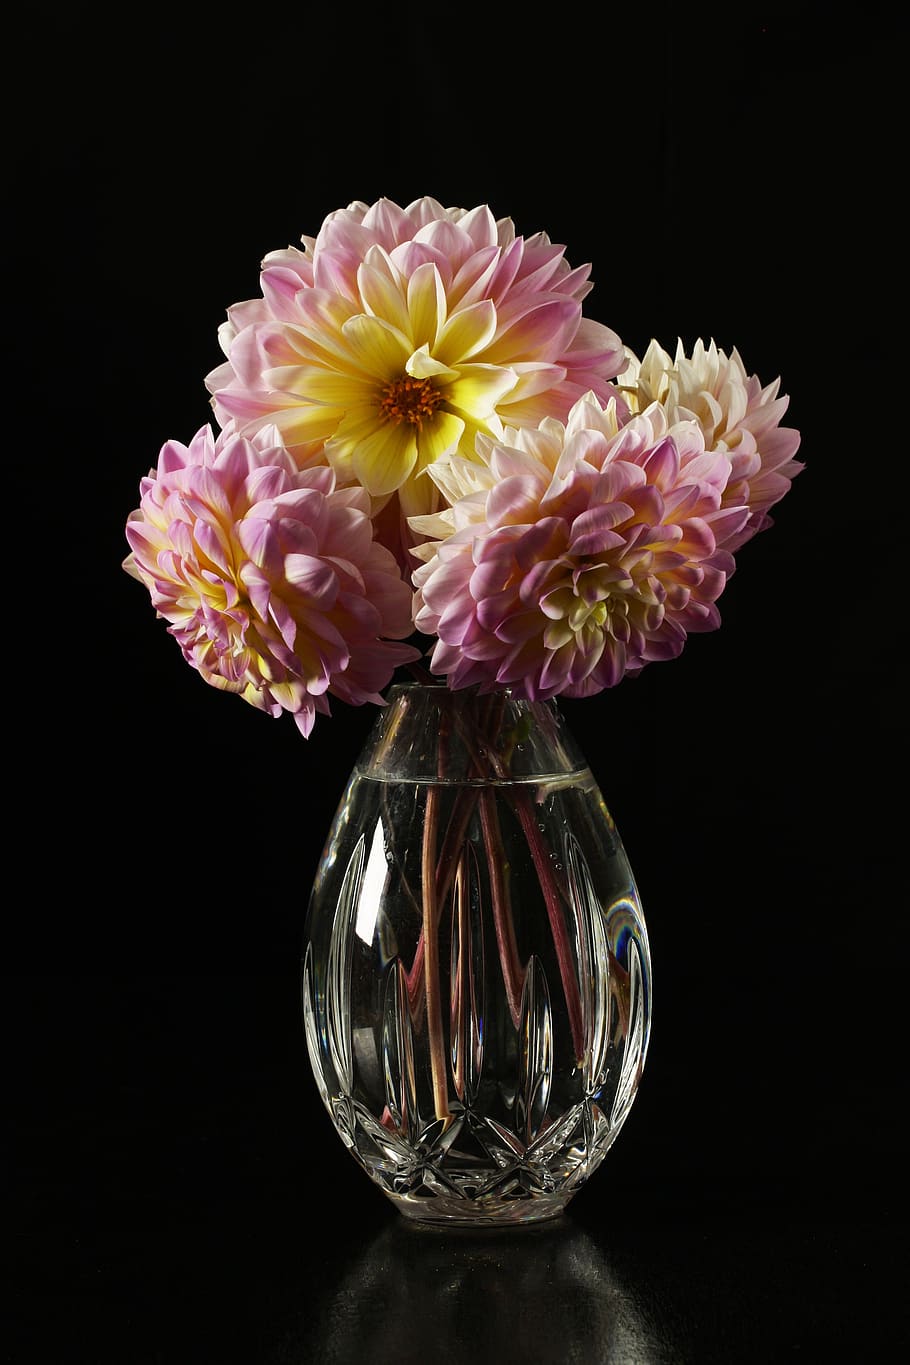 dálias, dálias em um vaso, flores, flores em um vaso, flor, jardim, rosa, planta com flor, interior, vulnerabilidade